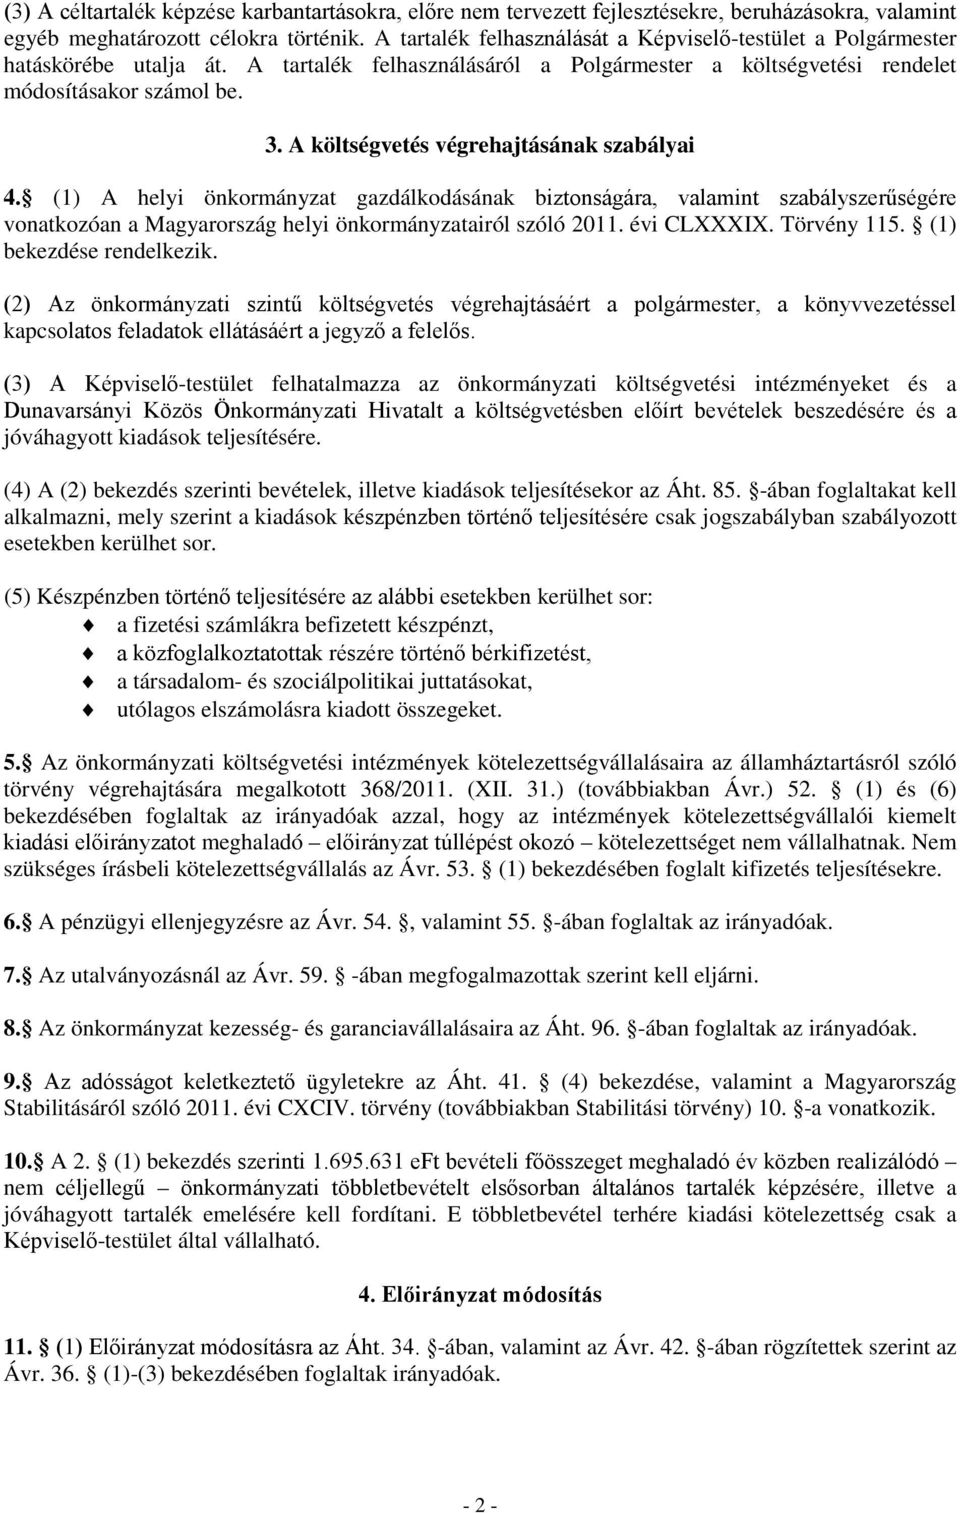 A költségvetés végrehajtásának szabályai 4. (1) A helyi önkormányzat gazdálkodásának biztonságára, valamint szabályszerűségére vonatkozóan a Magyarország helyi önkormányzatairól szóló 2011.